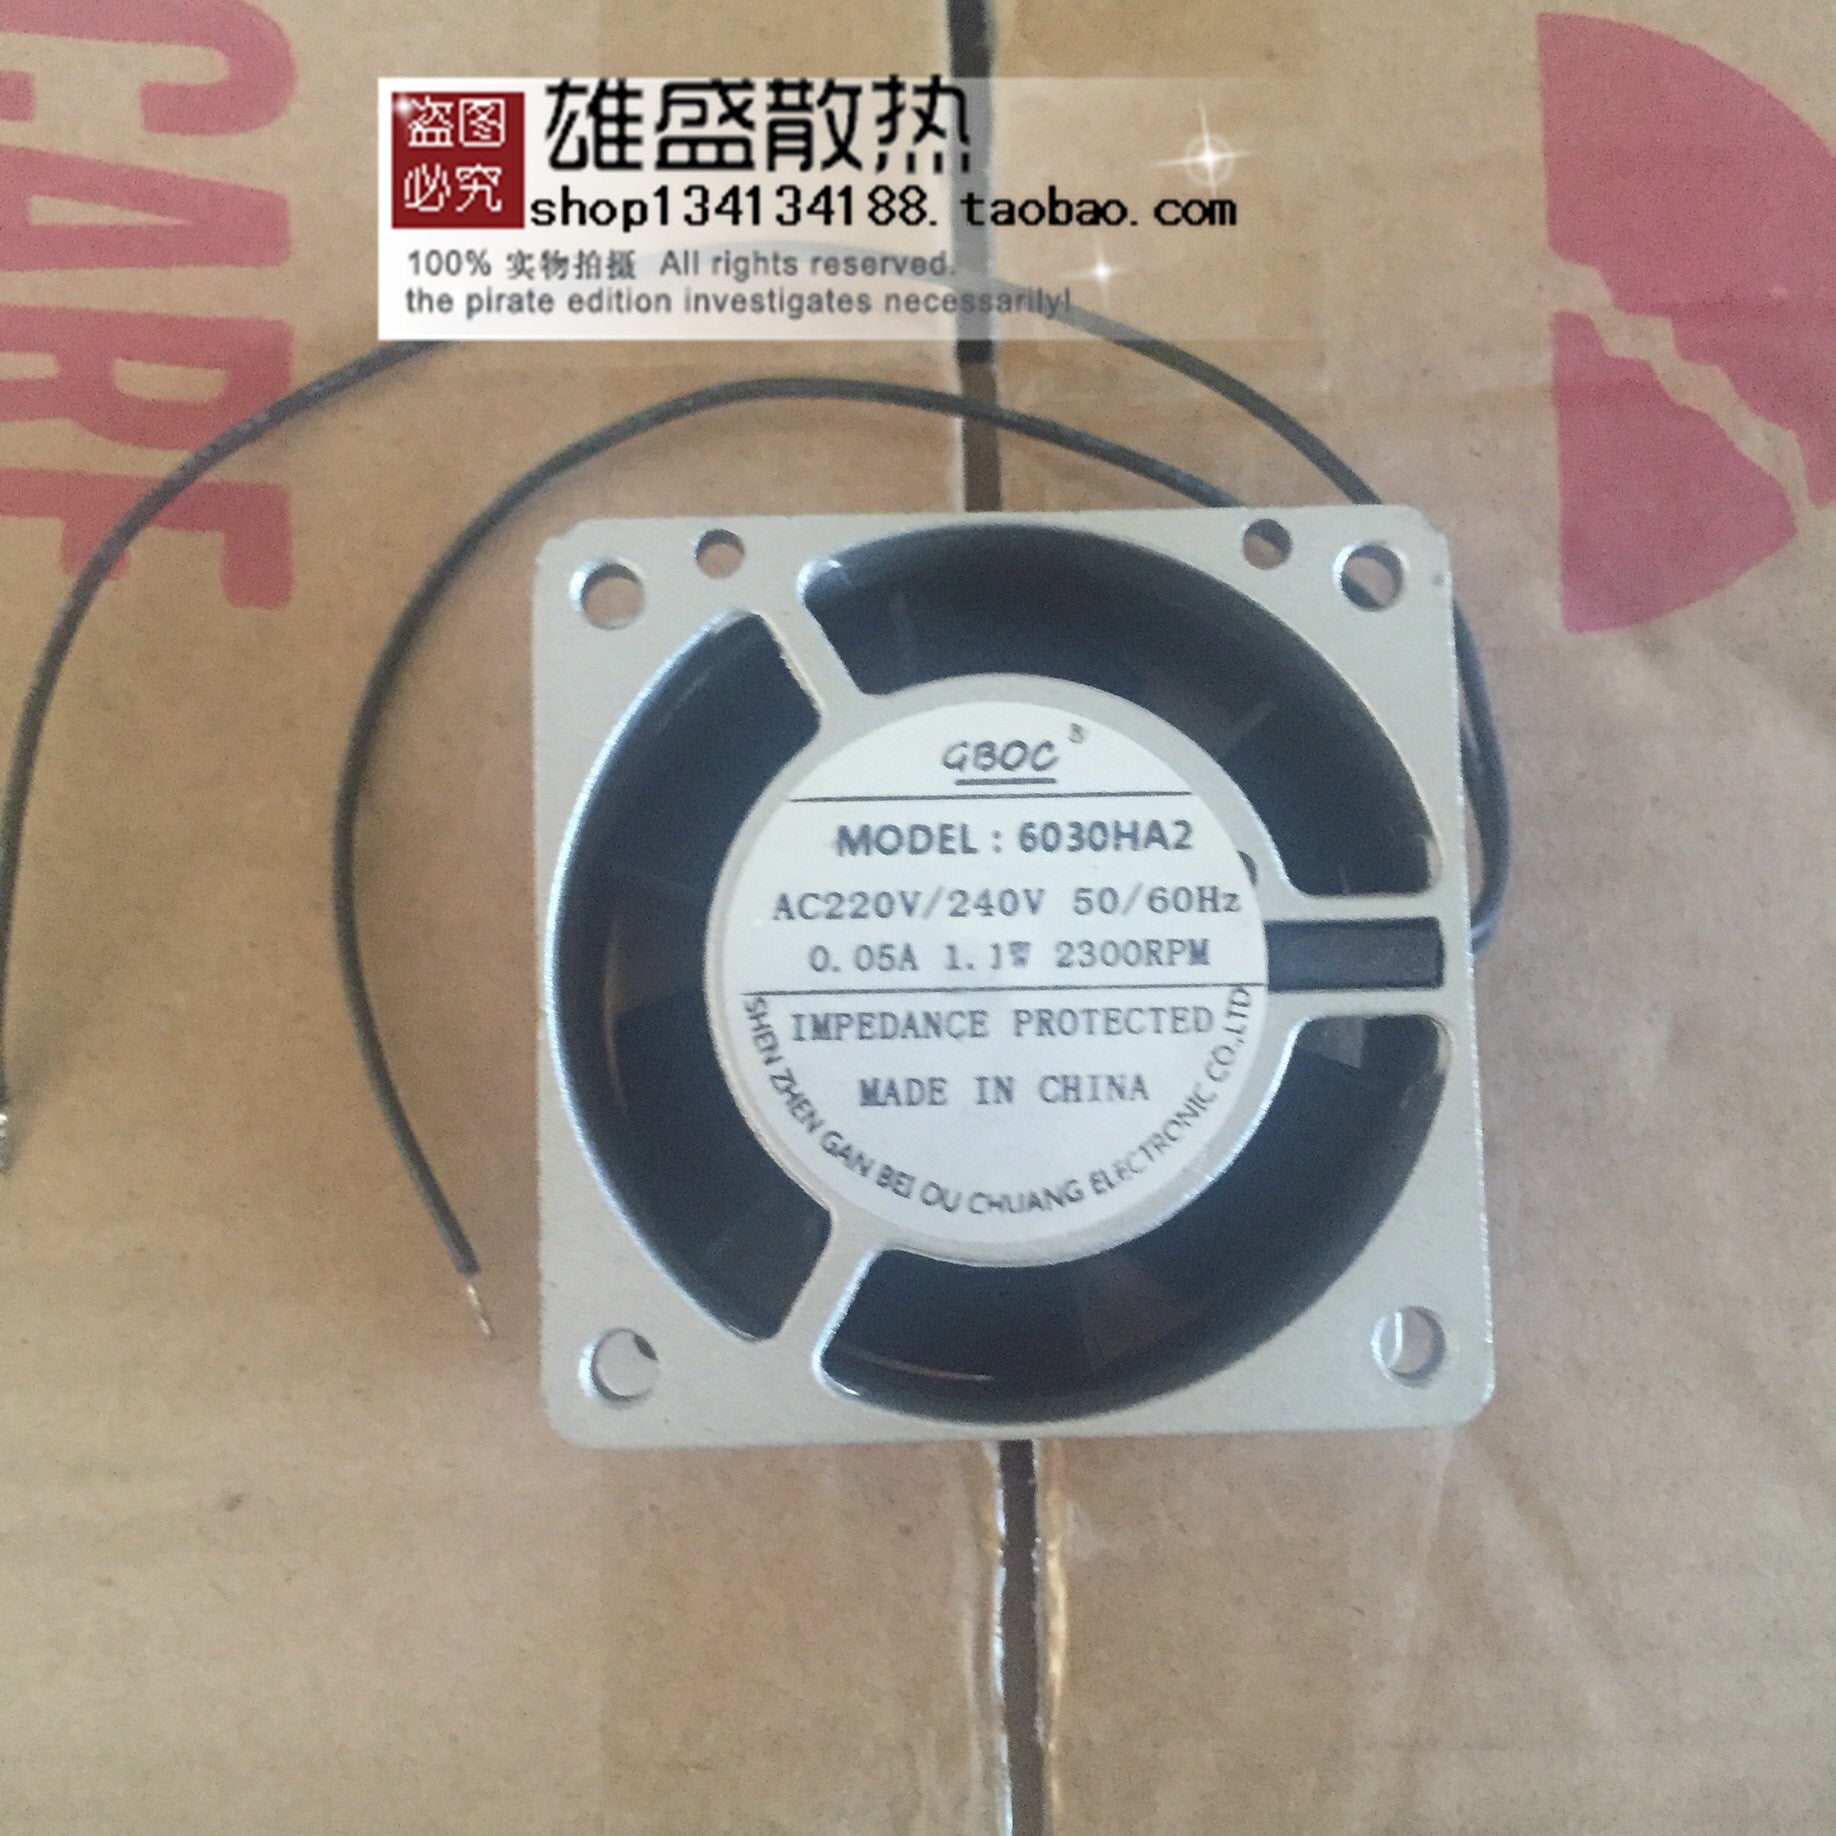 Gboc 6030ha2 220v 6cm 6028 ventilateur Miniature petit ventilateur